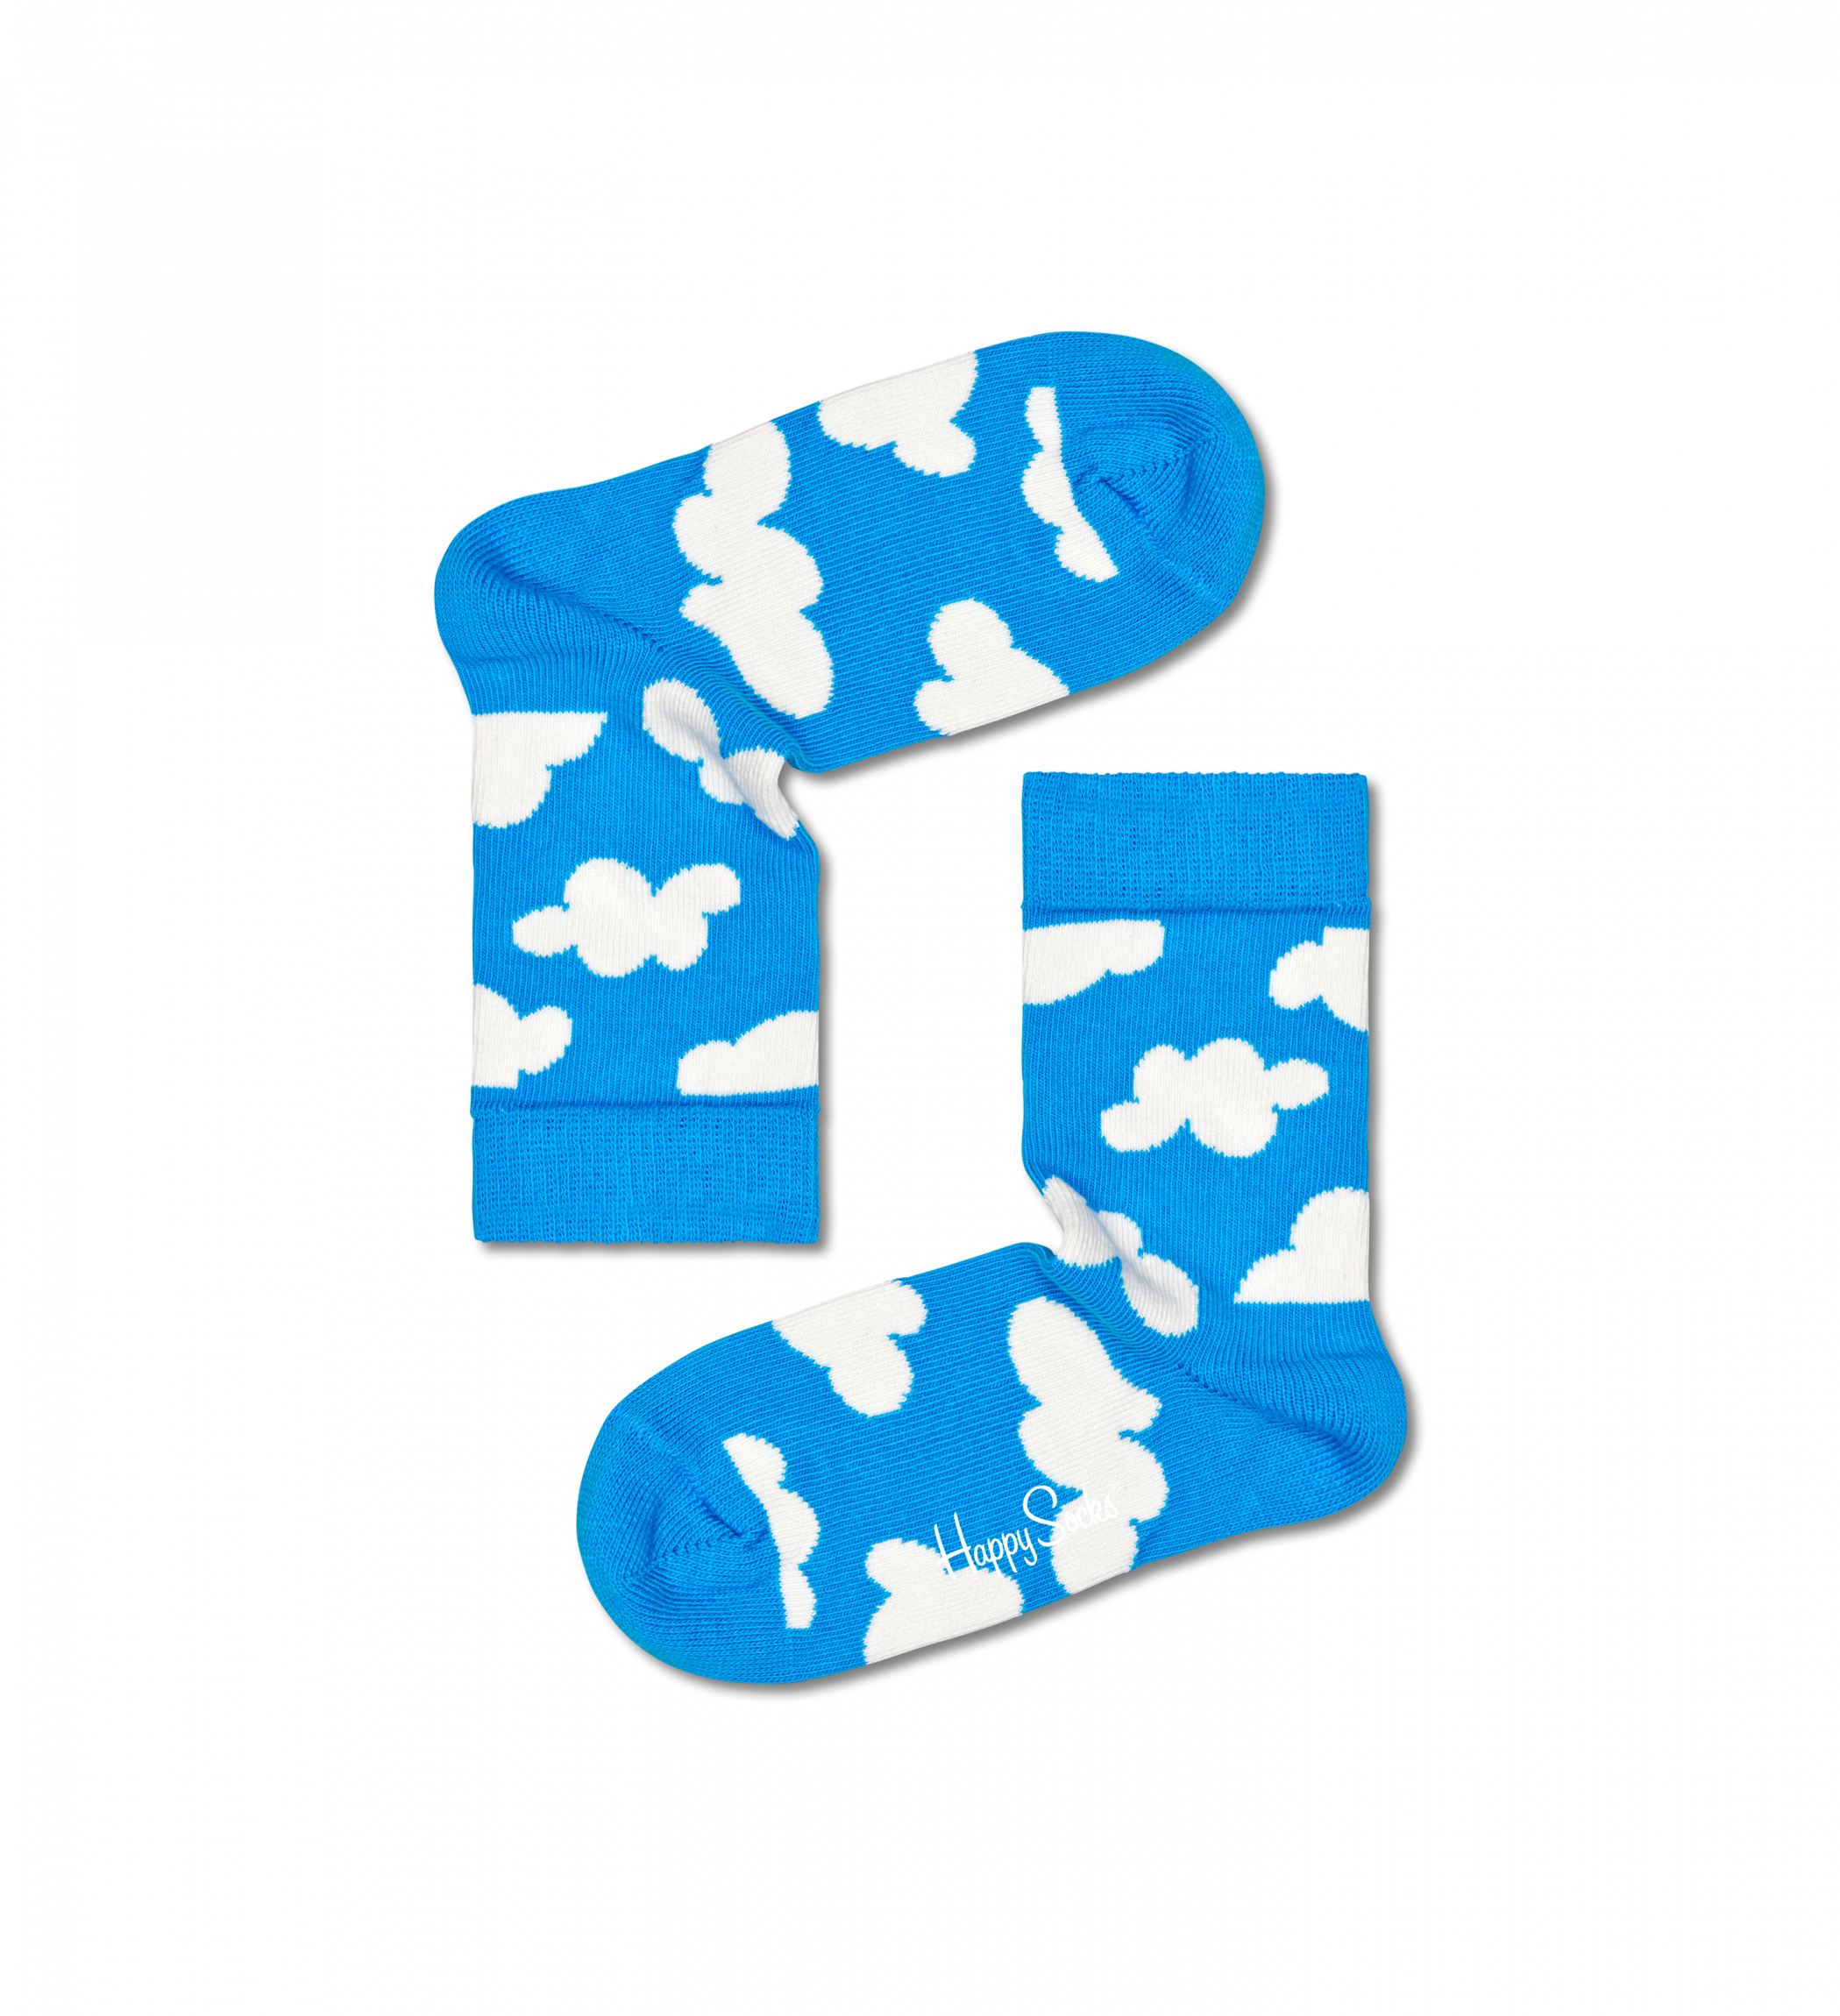 Detské modré ponožky Happy Socks s obláčikmi, vzor Cloudy